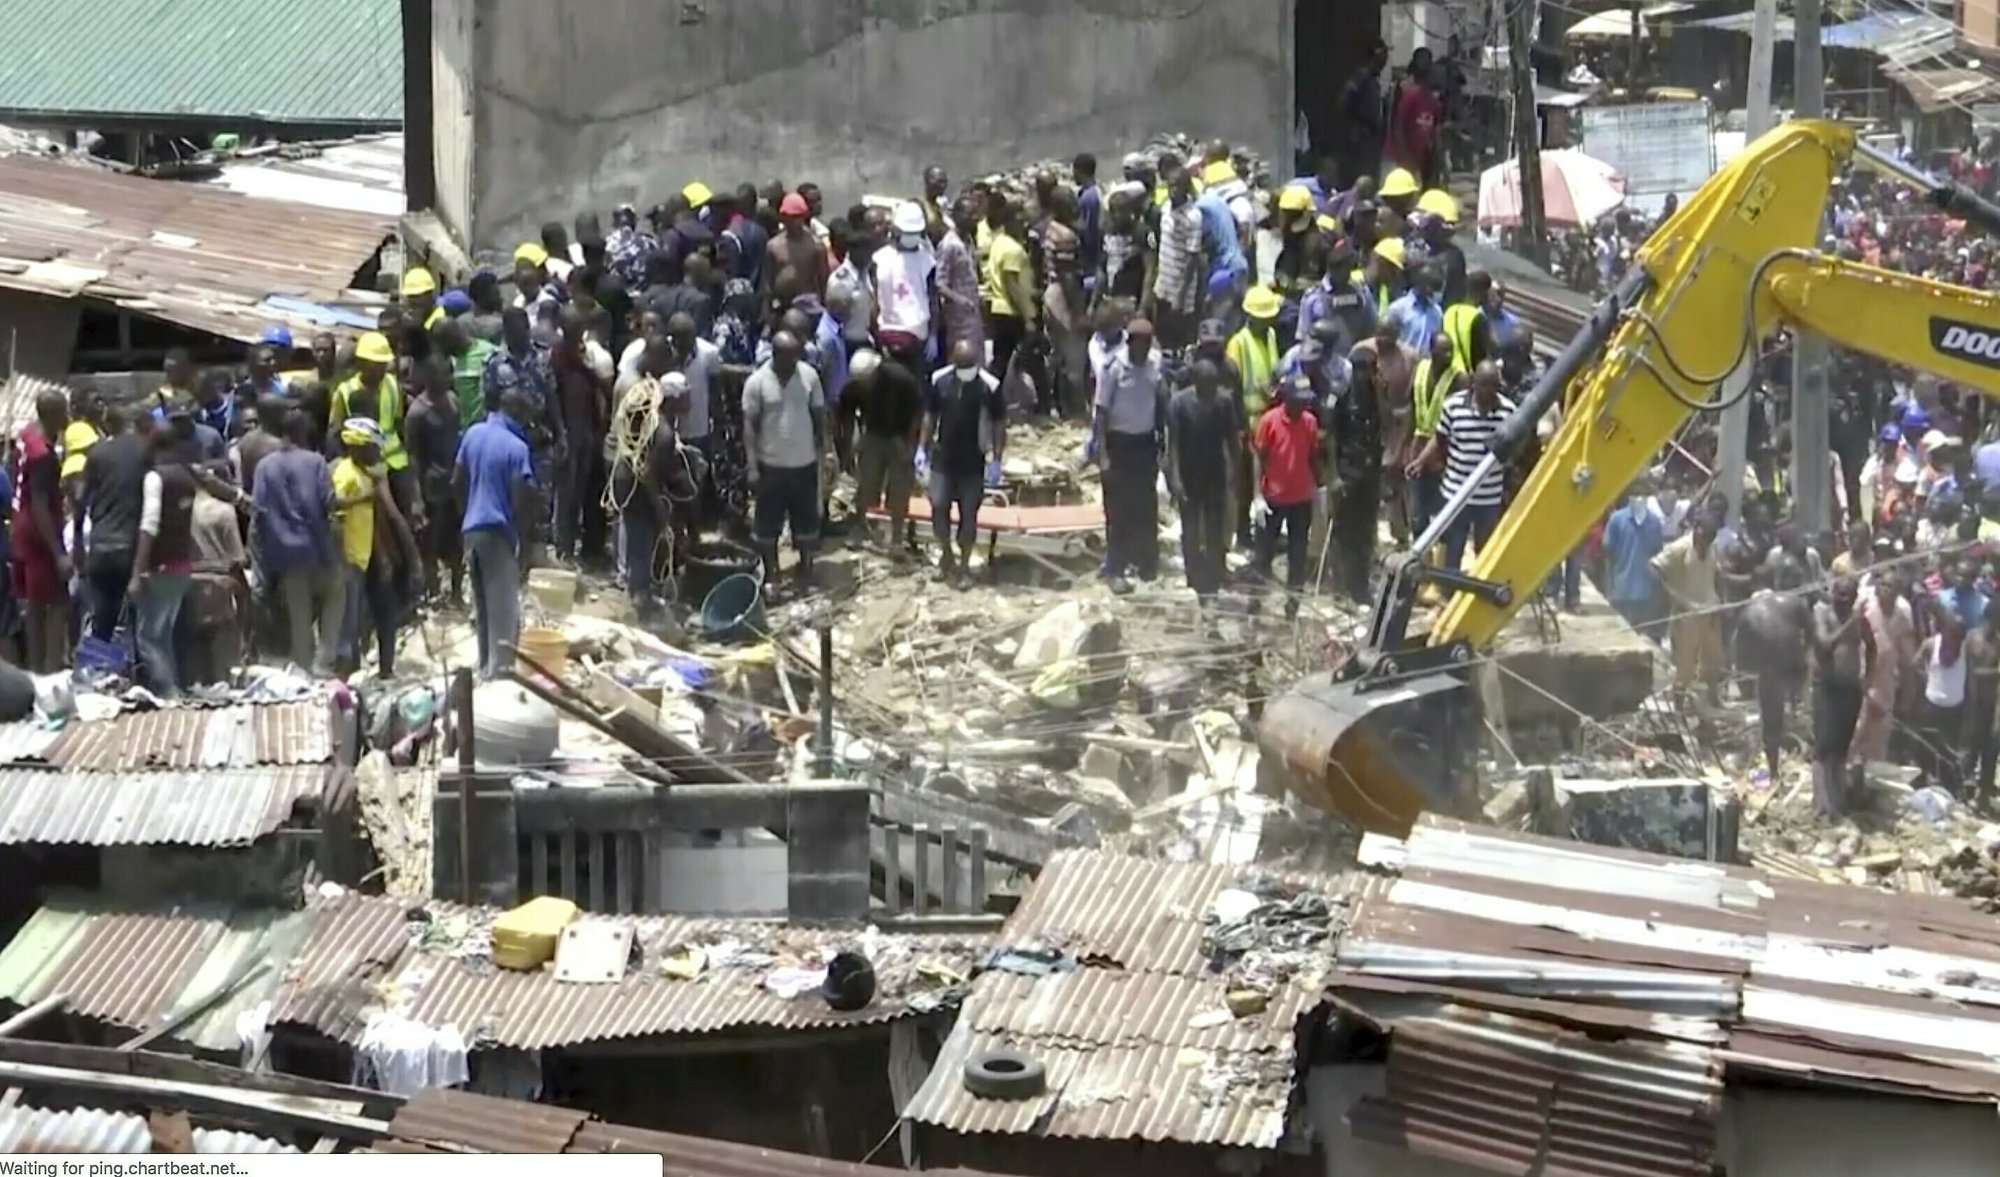 Equipos de emergencia y los equipos de emergencia trabajan en el lugar del colapso de un edificio en Lagos, Nigeria, el miércoles 13 de marzo de 2019. No hubo información oficial inmediata sobre el número de víctimas. (Foto AP)